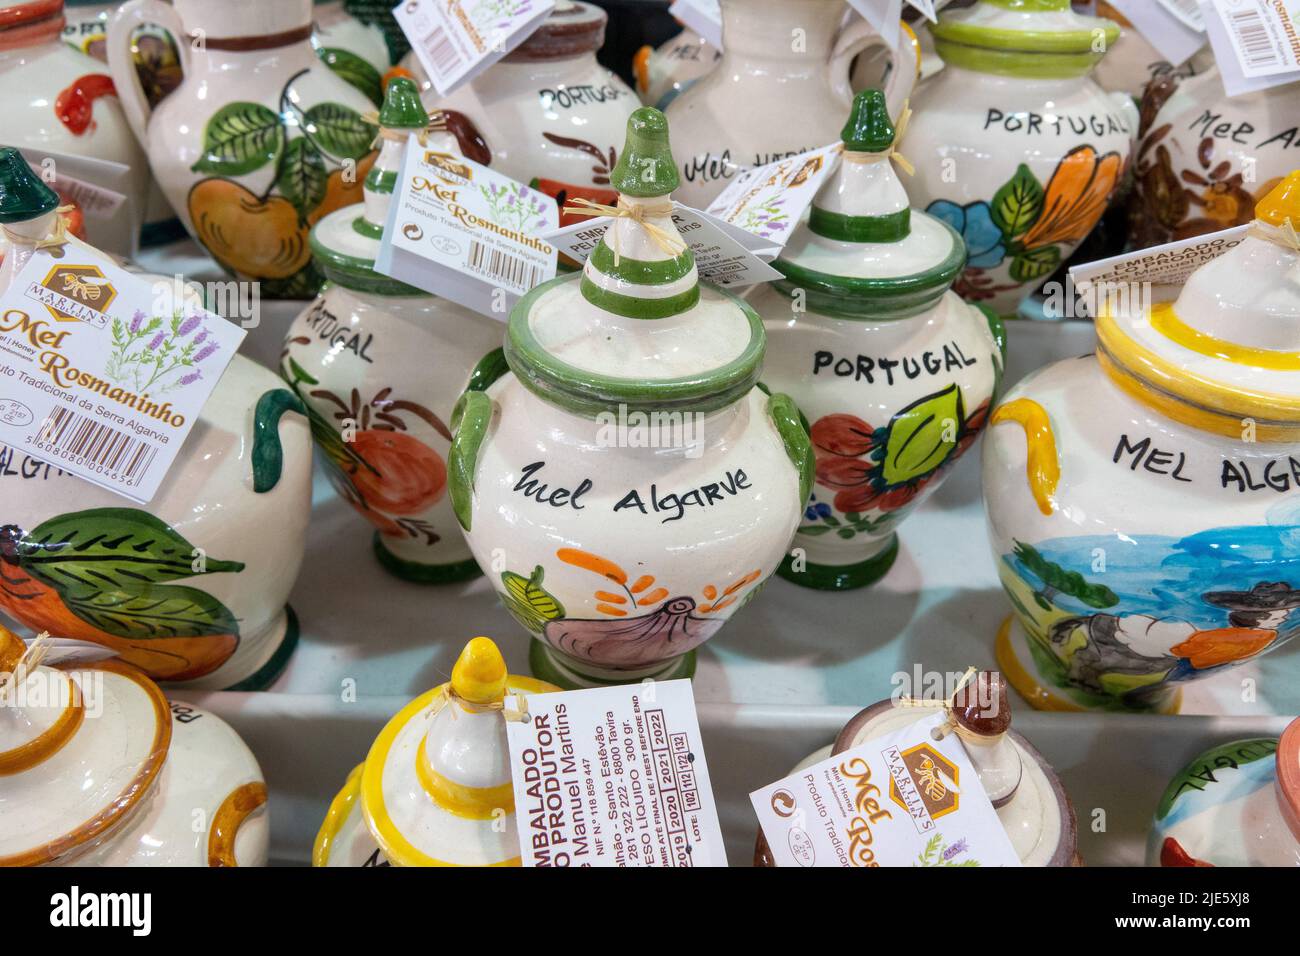 Miel de Lavanda Portuguesa a la venta en macetas tradicionales de barro decorativas portuguesas pintadas a mano con recuerdos turísticos de Mel Algarve y Portugal Foto de stock